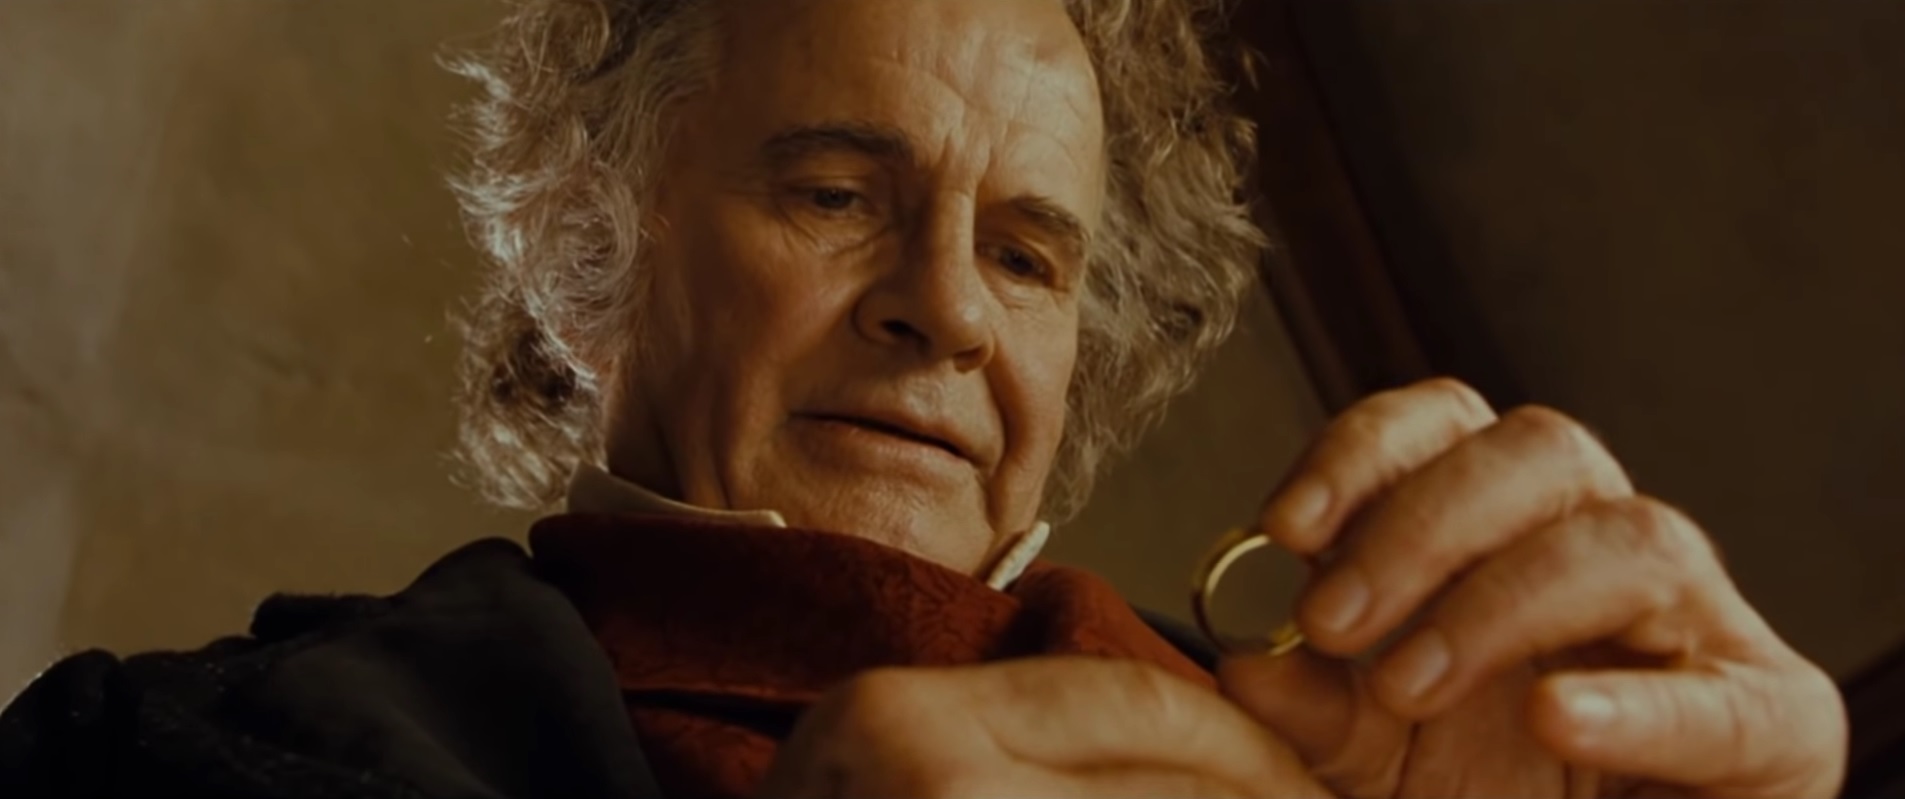 Ίαν Χολμ: Πέθανε ο Bilbo Baggins του Lord of the Rings